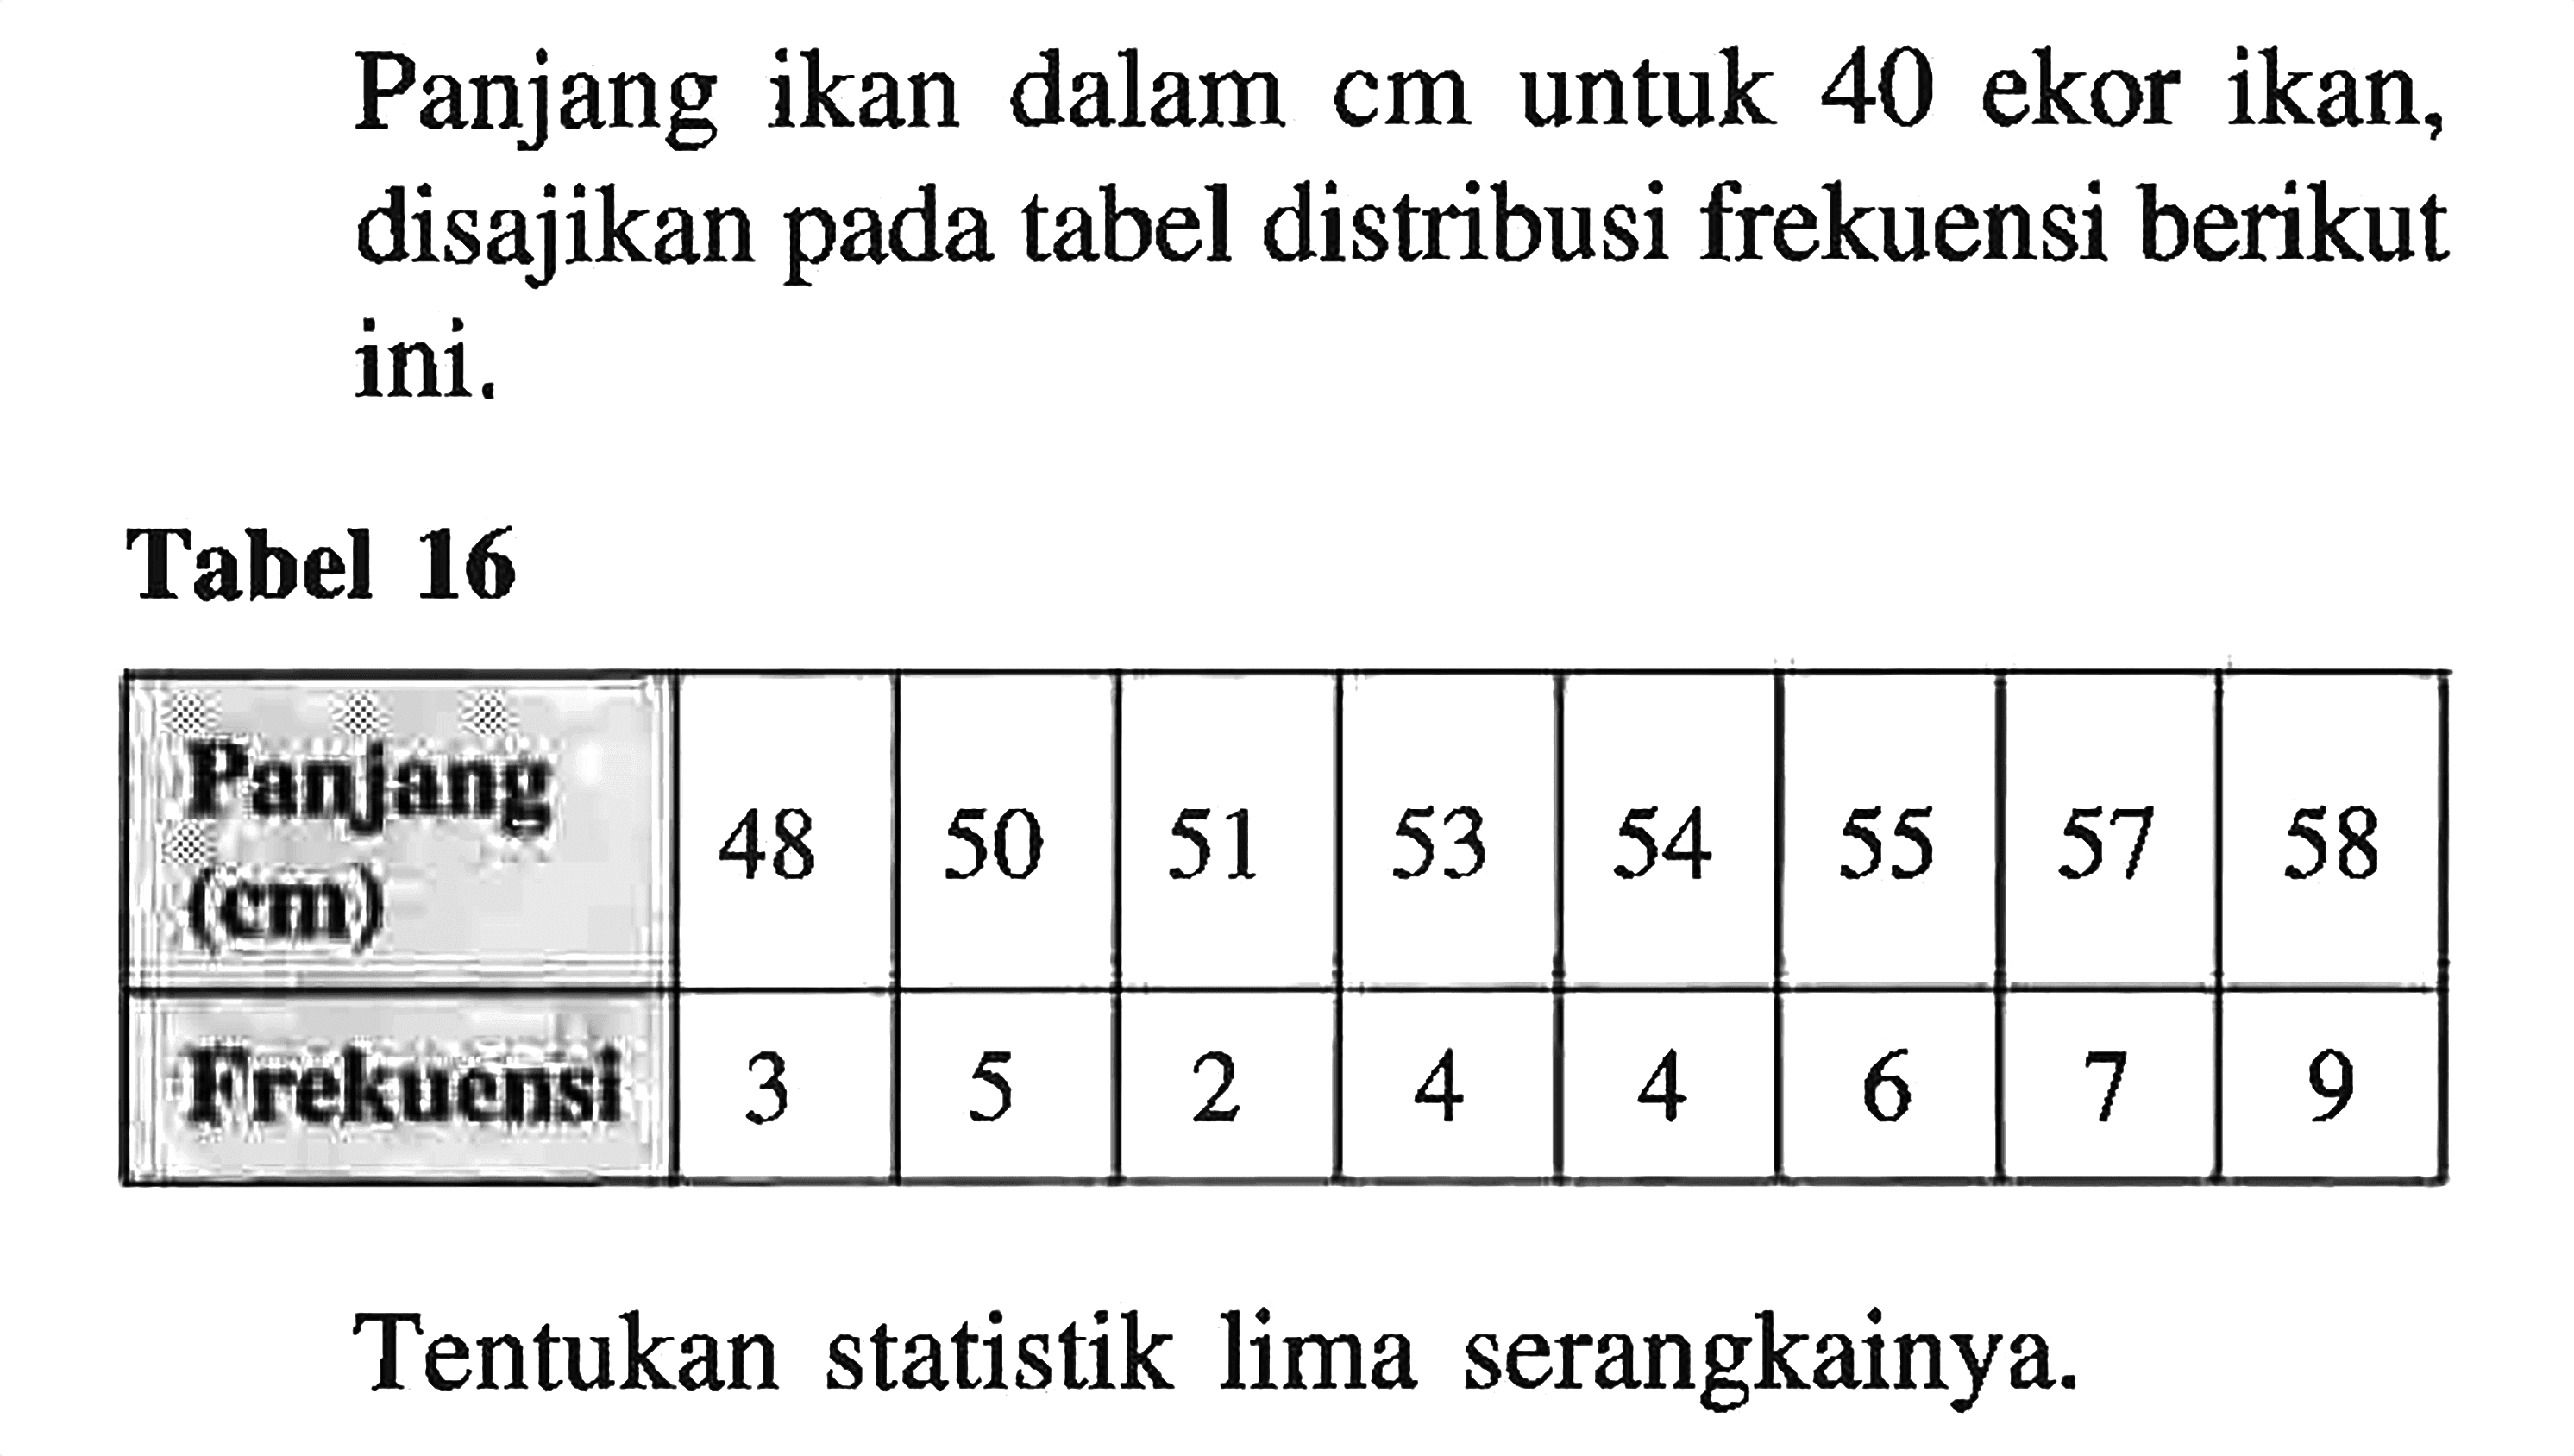 Panjang ikan dalam cm untuk 40 ekor ikan, disajikan pada tabel distribusi frekuensi berikut ini. Tabel 16 Panjang (cm) 48 50 51 53 54 55 57 58 Frekuensi 3 5 2 4 4 6 7 9 Tentukan statistik lima serangkainya.